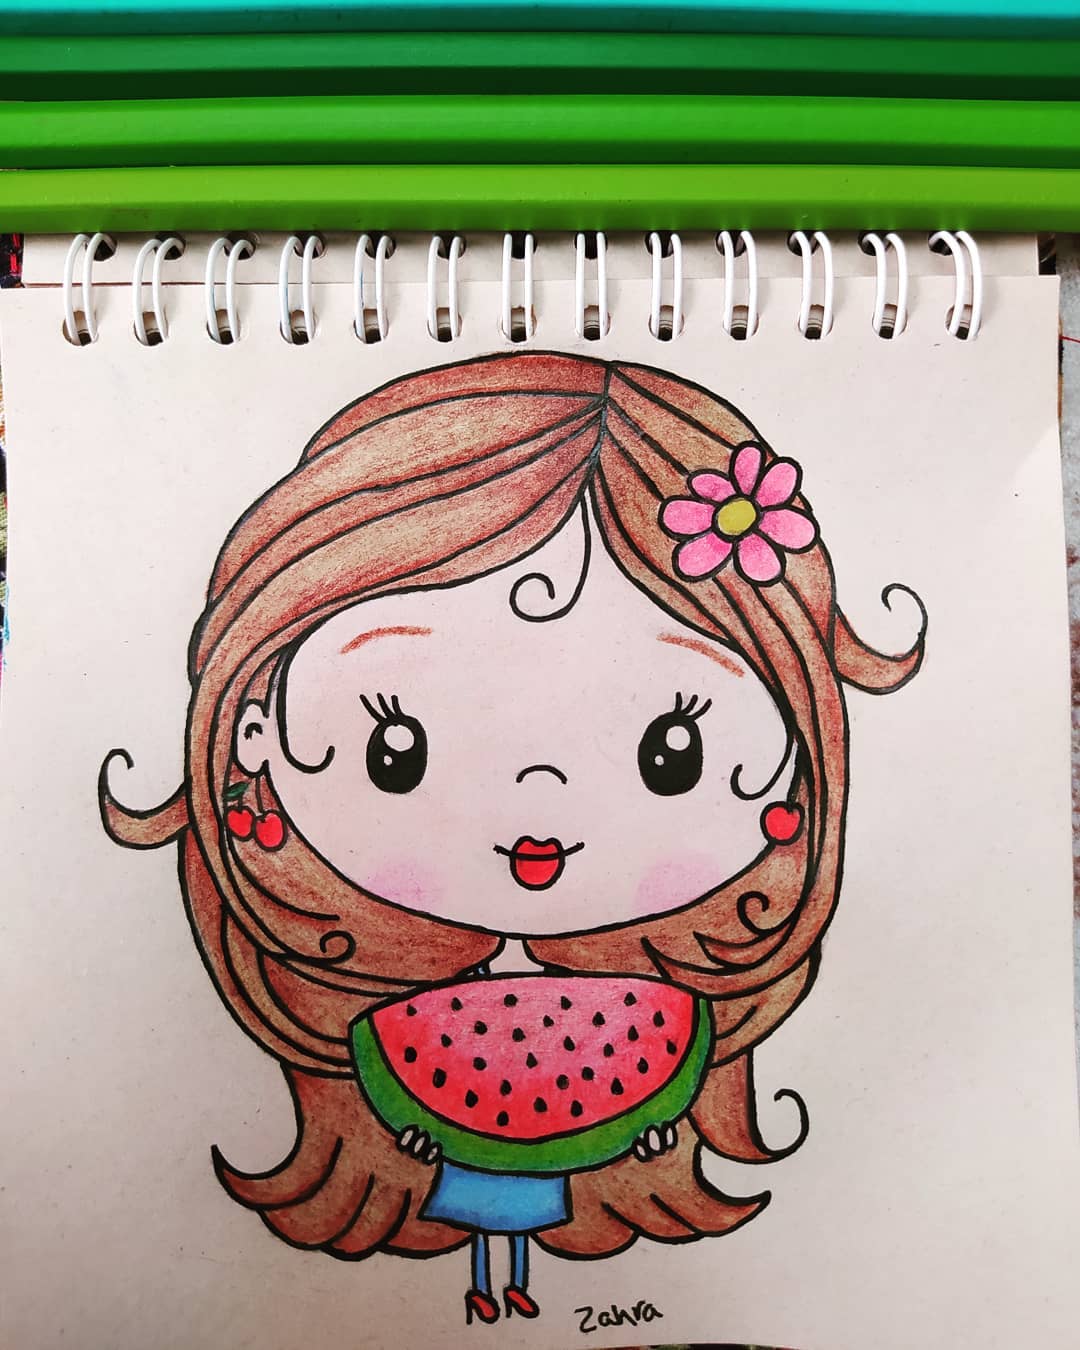 نقاشی دختر در حال هندونه خوردن